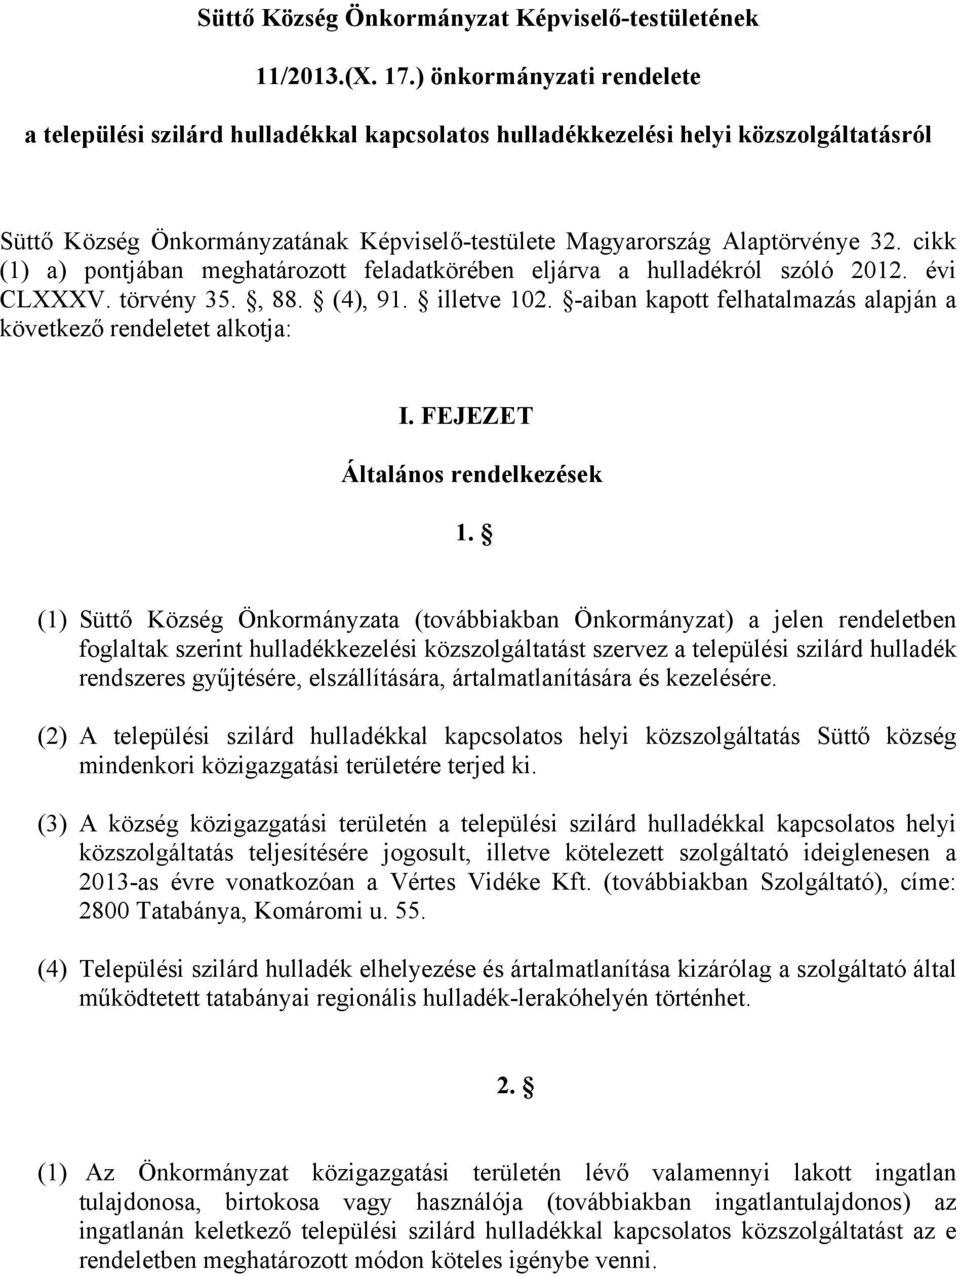 cikk (1) a) pontjában meghatározott feladatkörében eljárva a hulladékról szóló 2012. évi CLXXXV. törvény 35., 88. (4), 91. illetve 102.